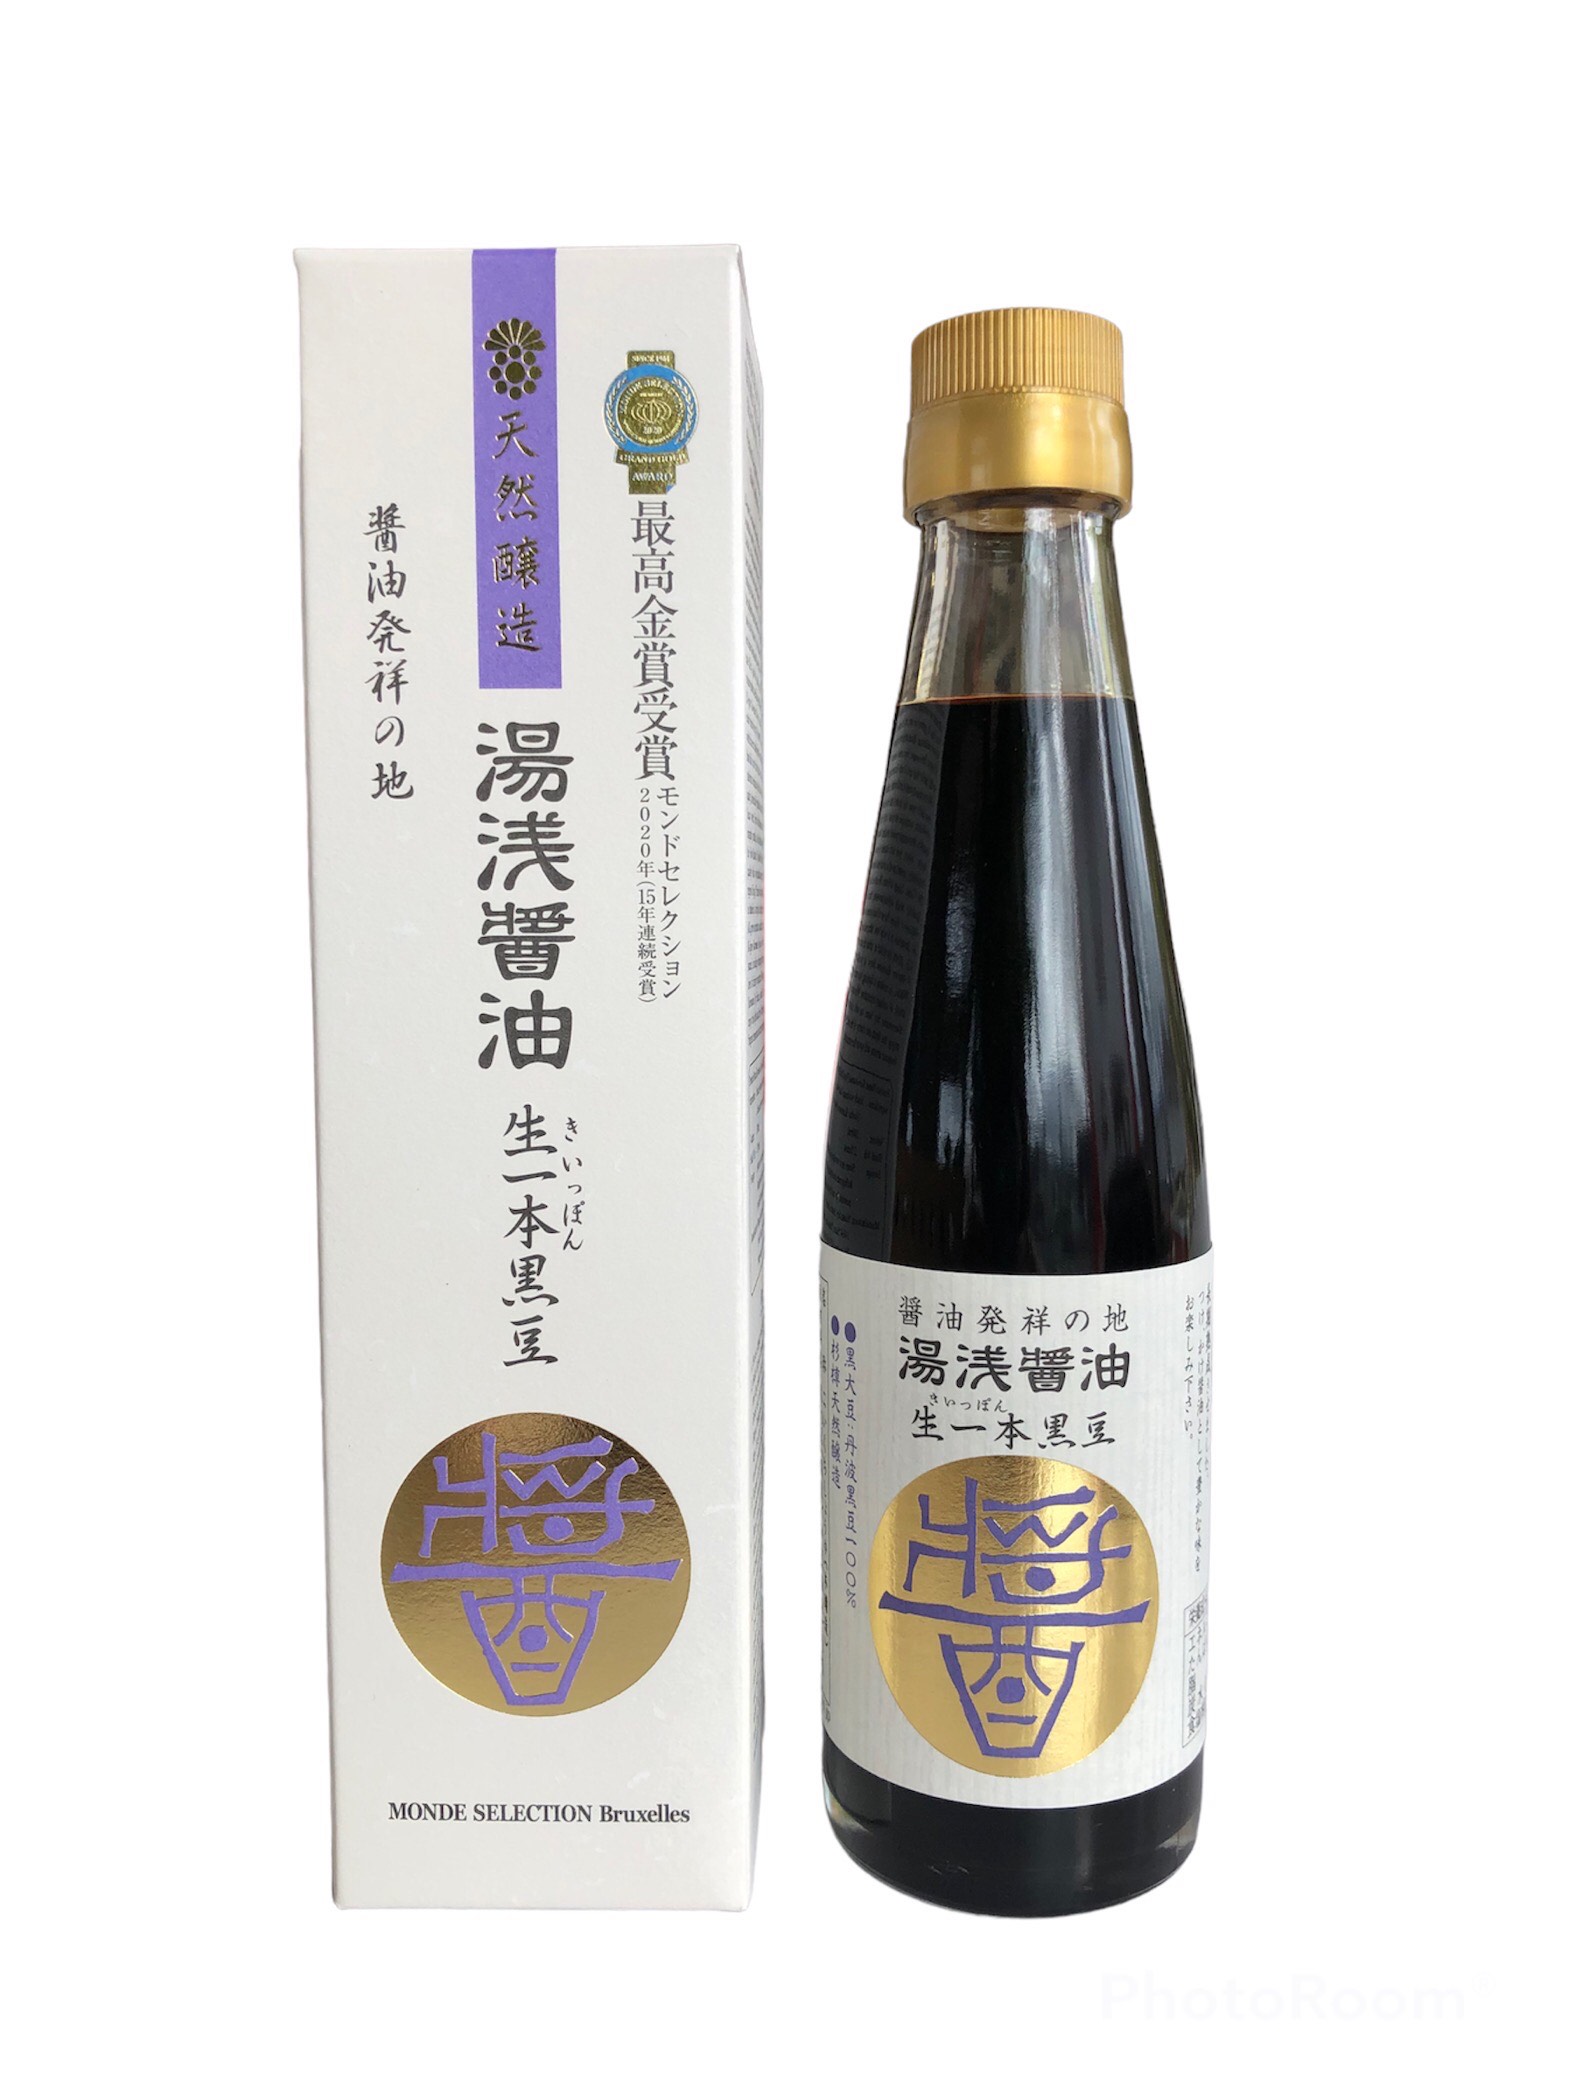 湯浅醤油 生一本黒豆 瓶 200ml × 1本の商品画像